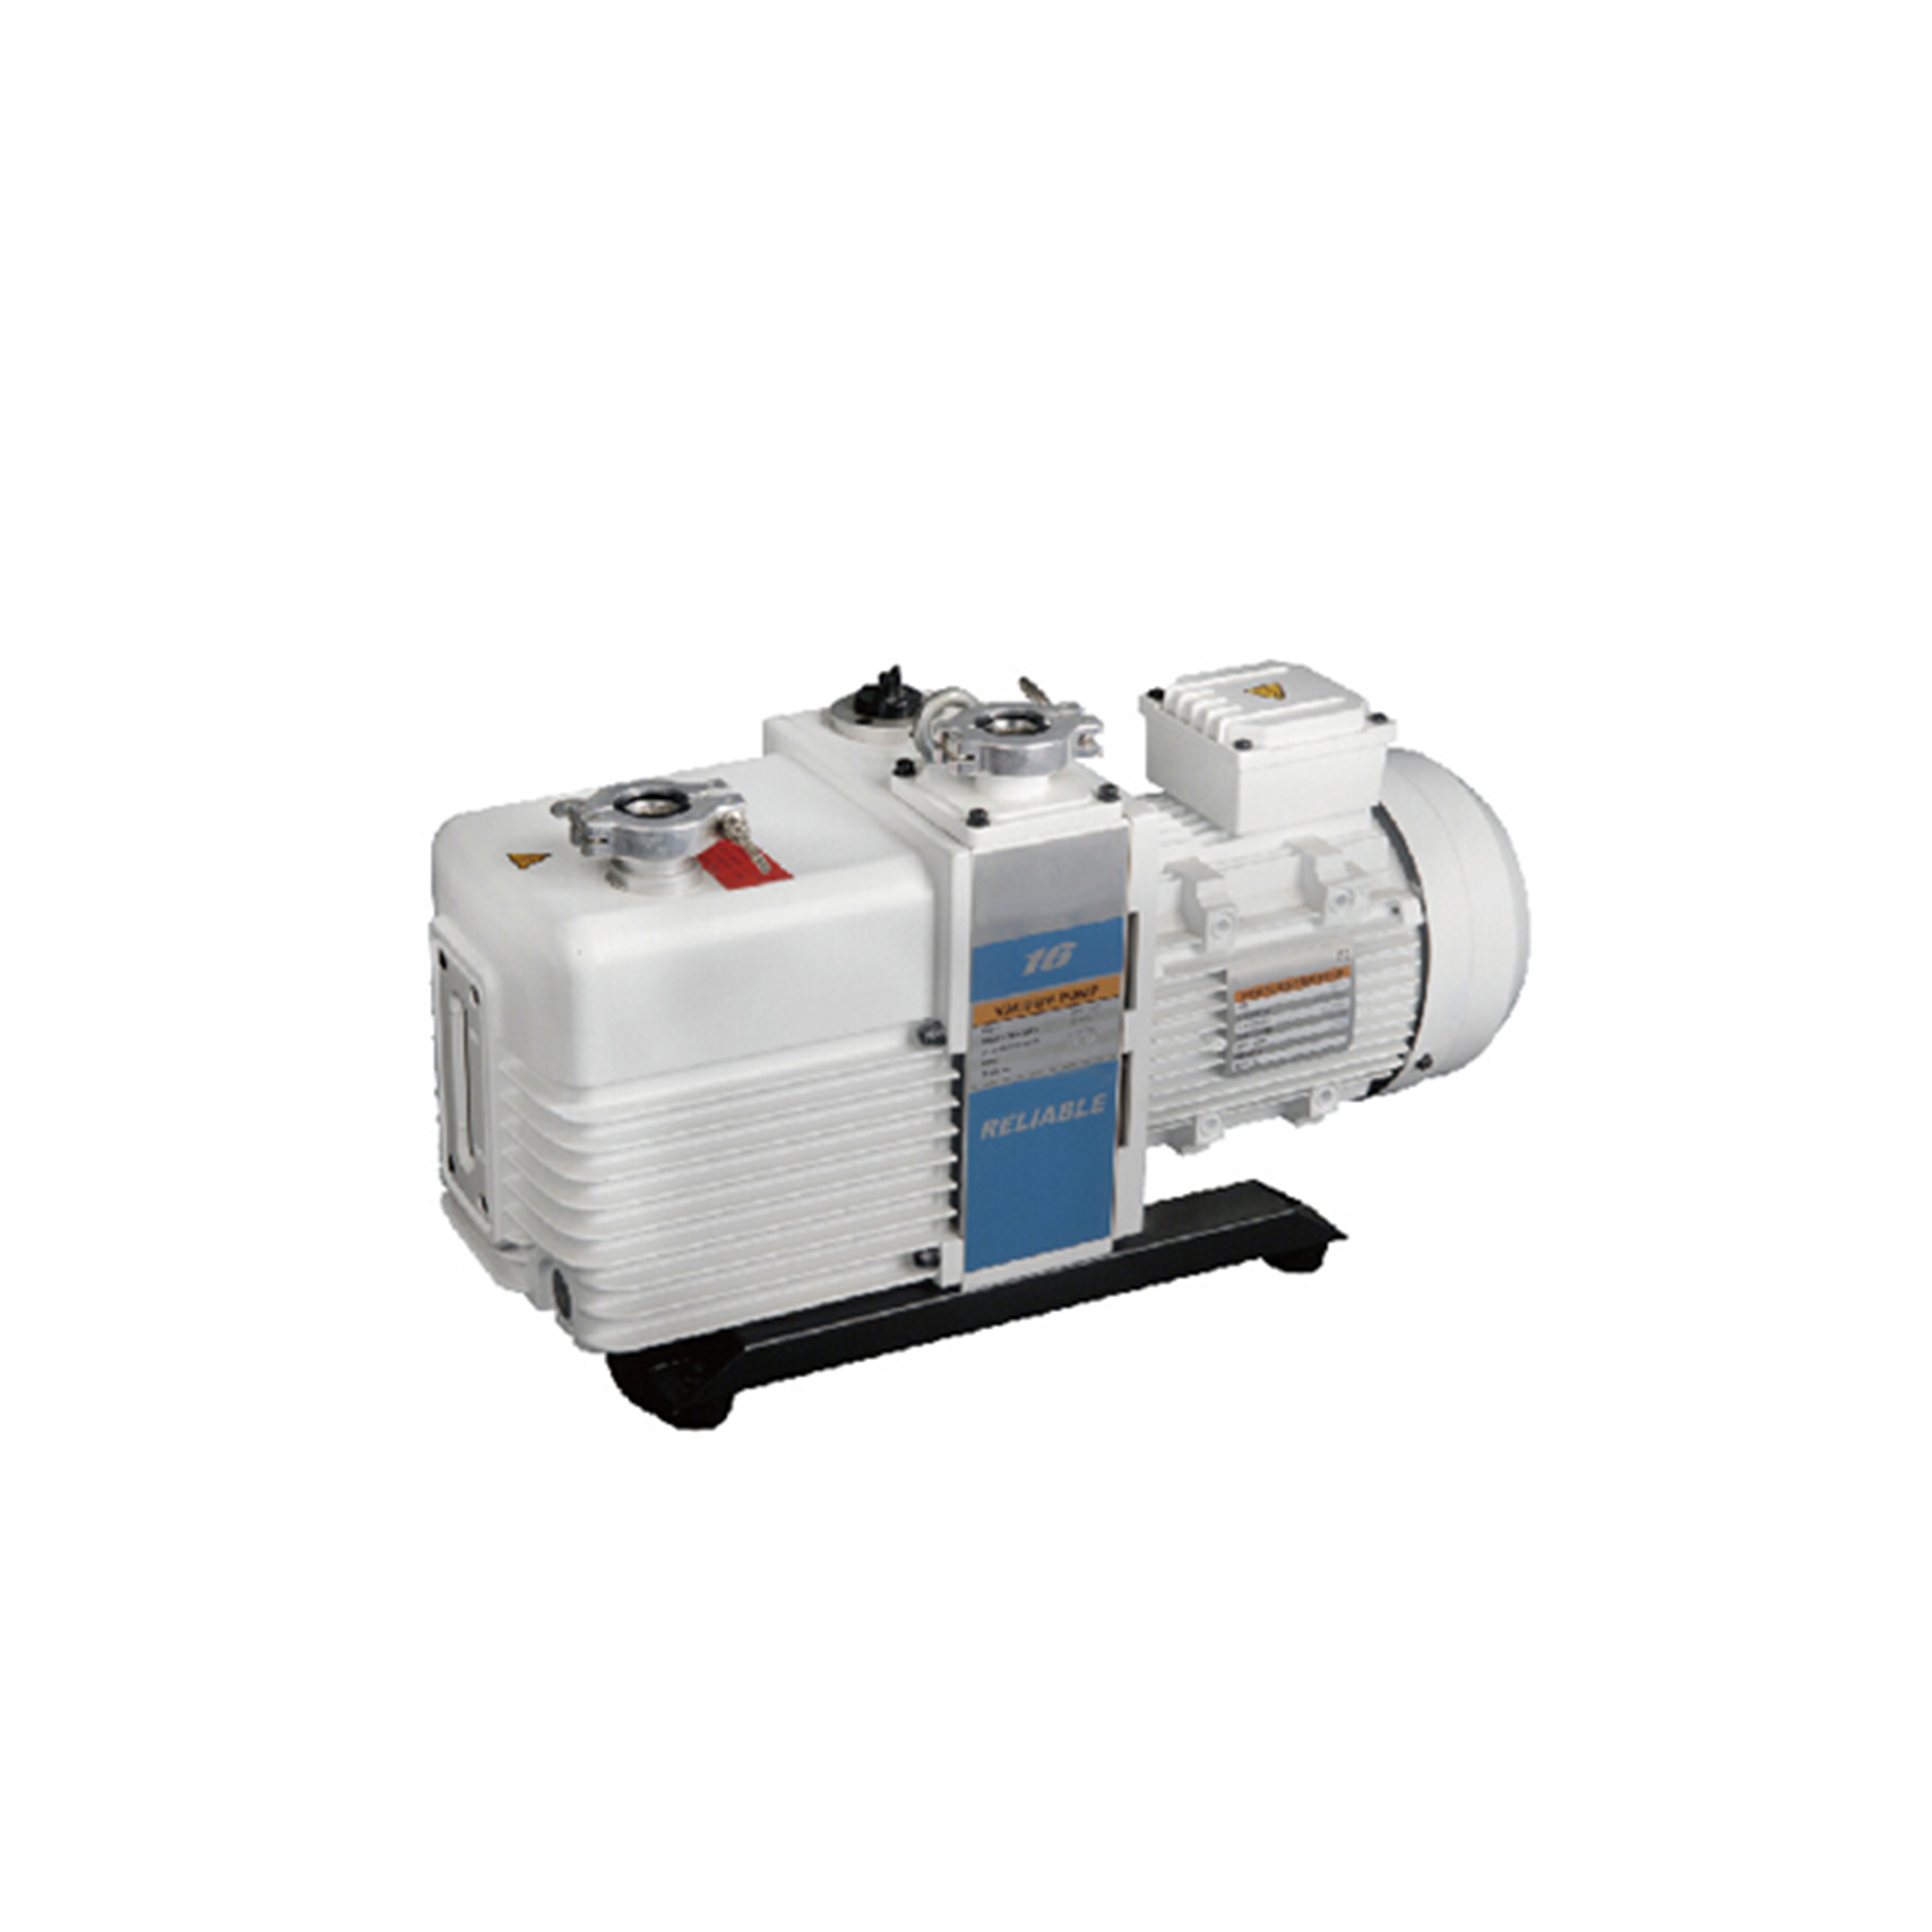 VRD-M series Dual Stage Vacuum Pump 